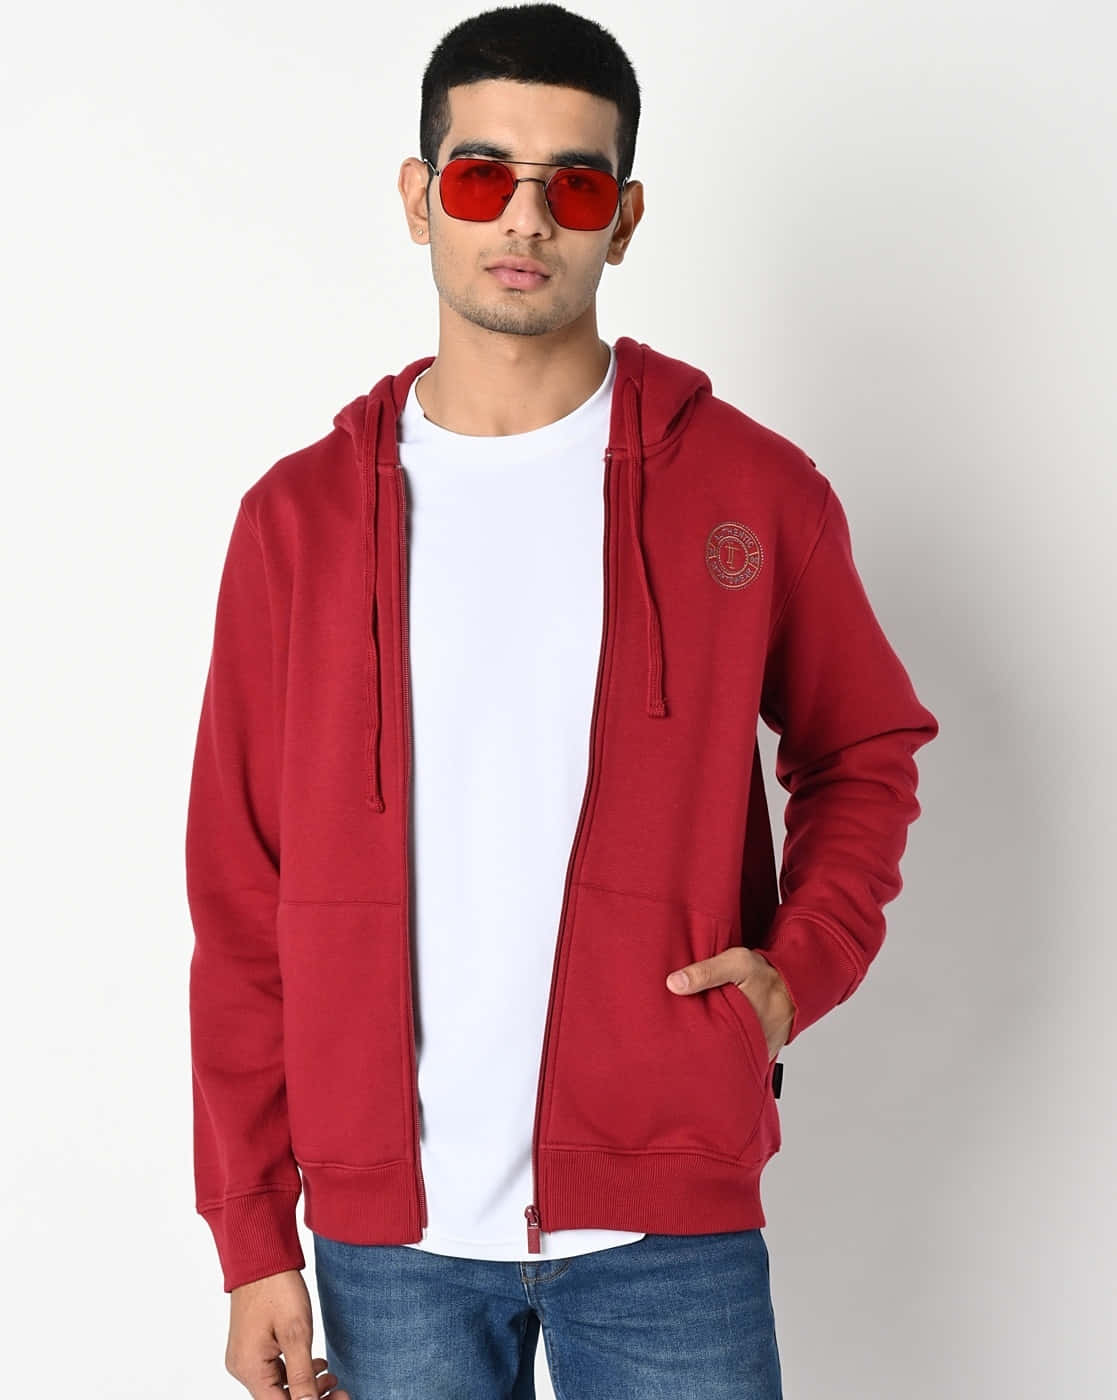 Trendy red hoodie in a striking pose Wallpaper